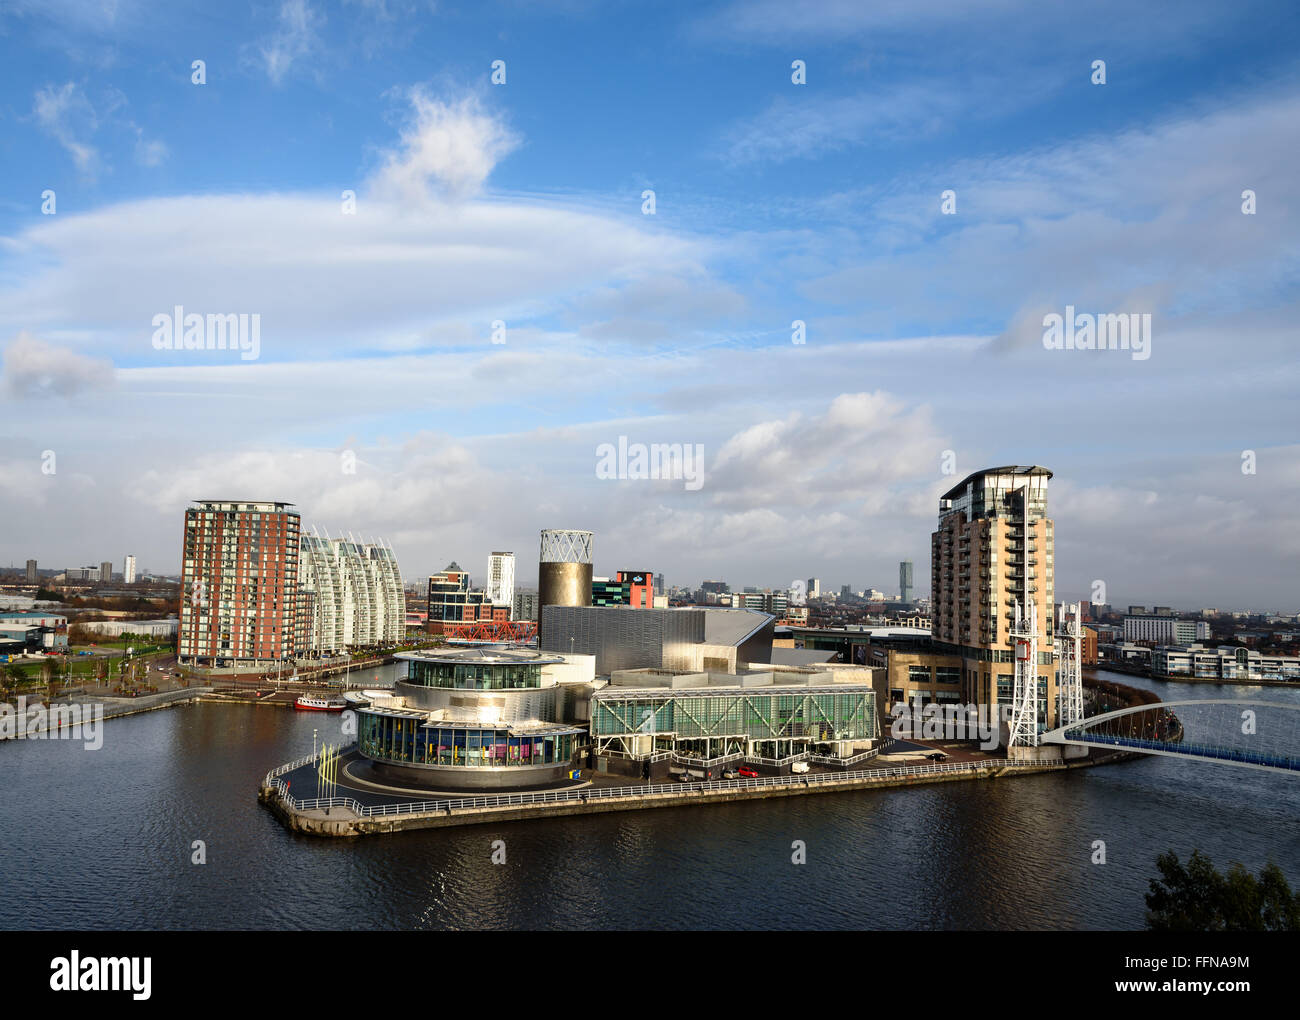 Luftaufnahme der Medienstadt, Lowery Theater in Salford Quays, Manchester, England. Stockfoto